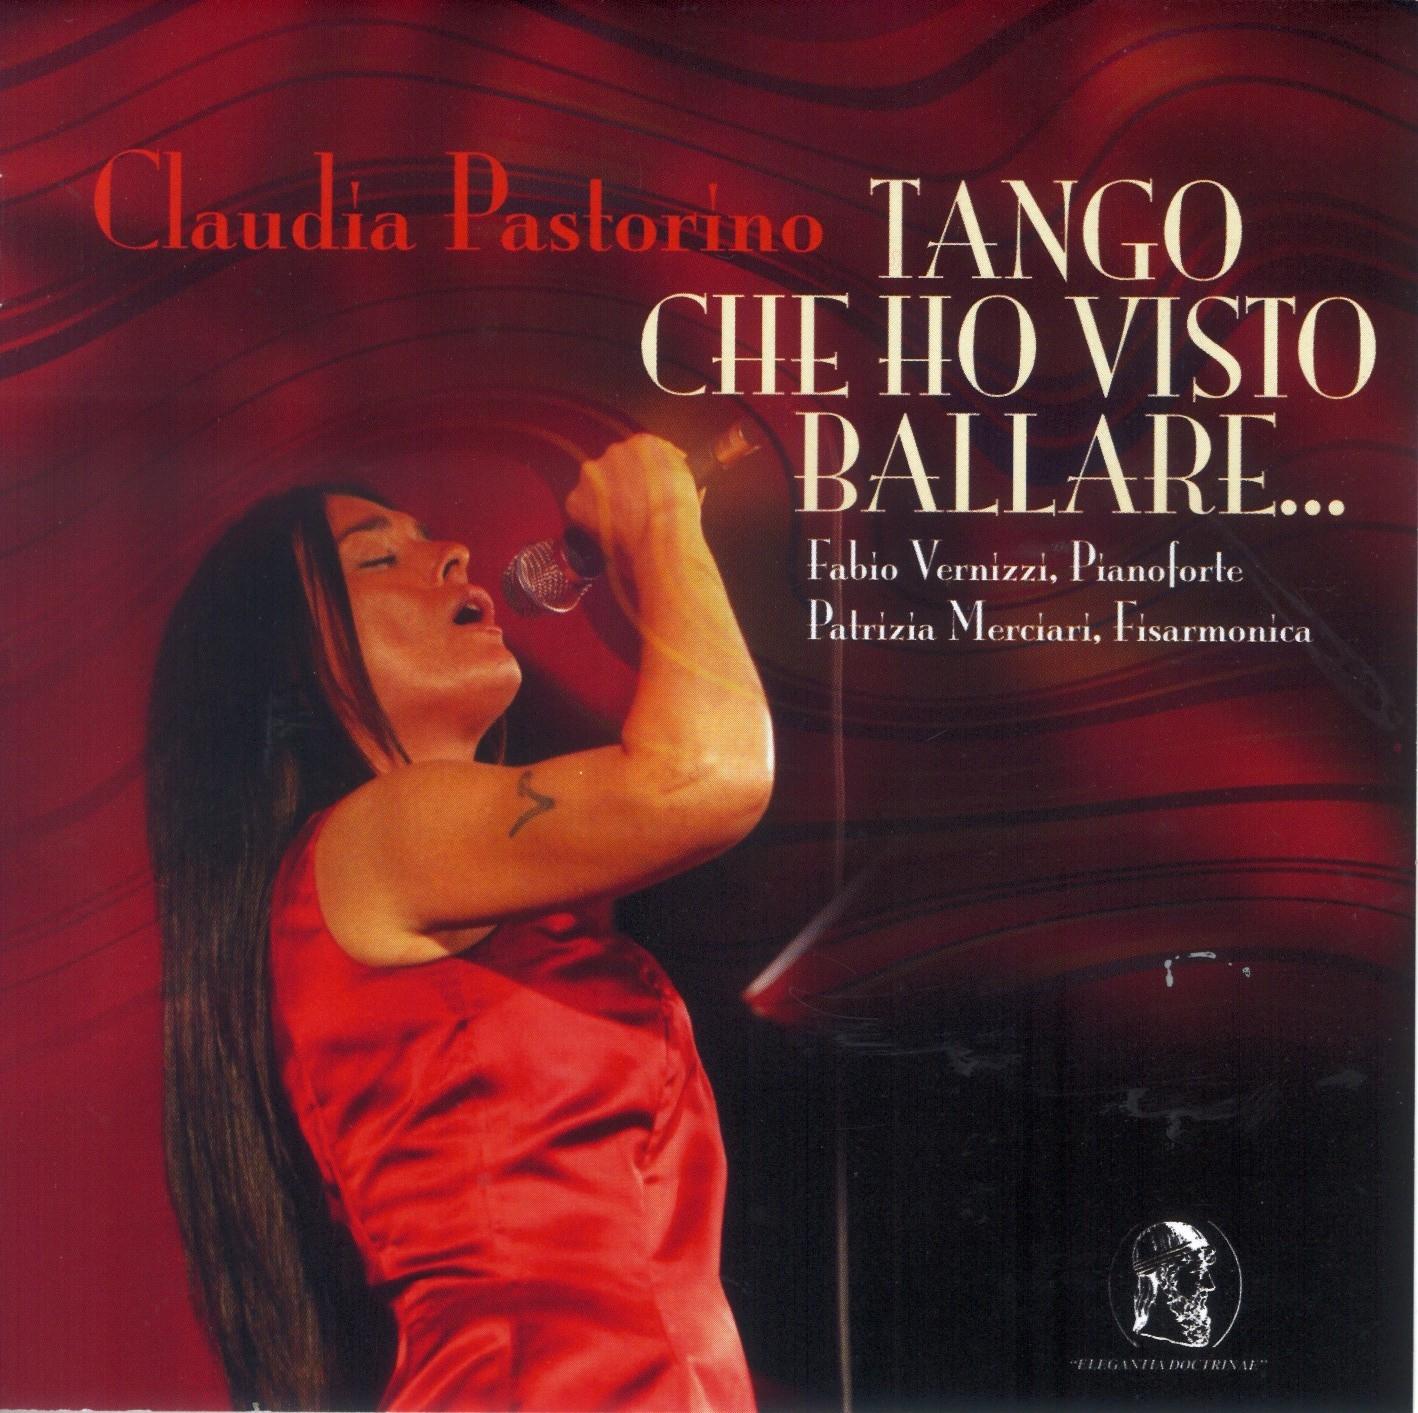 Claudia Pastorino - Tango che ho visto ballare …